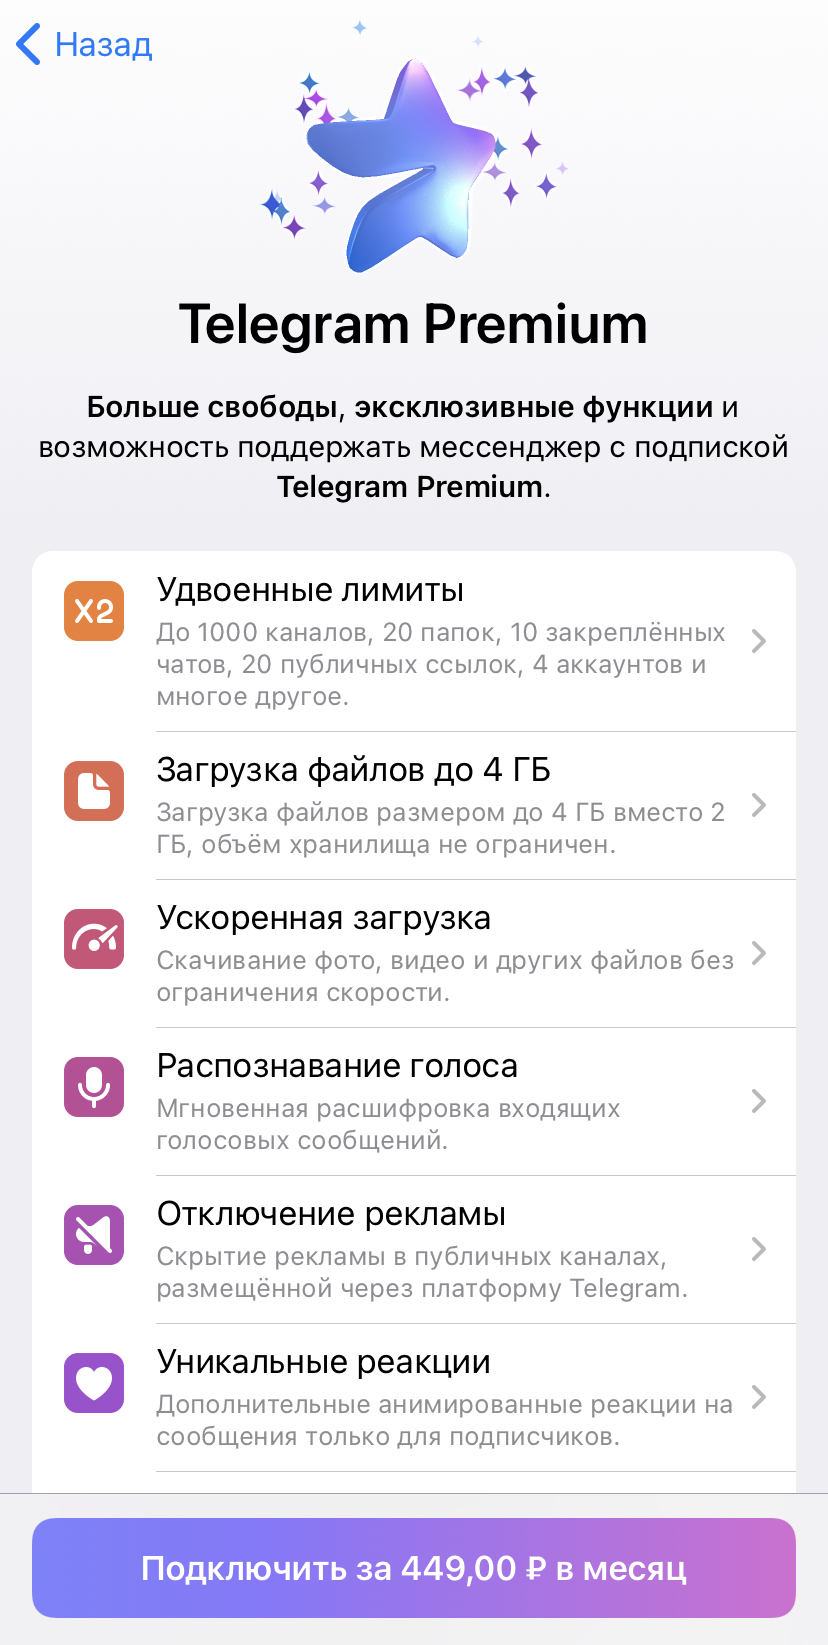 Telegram Premium Функции.jpg